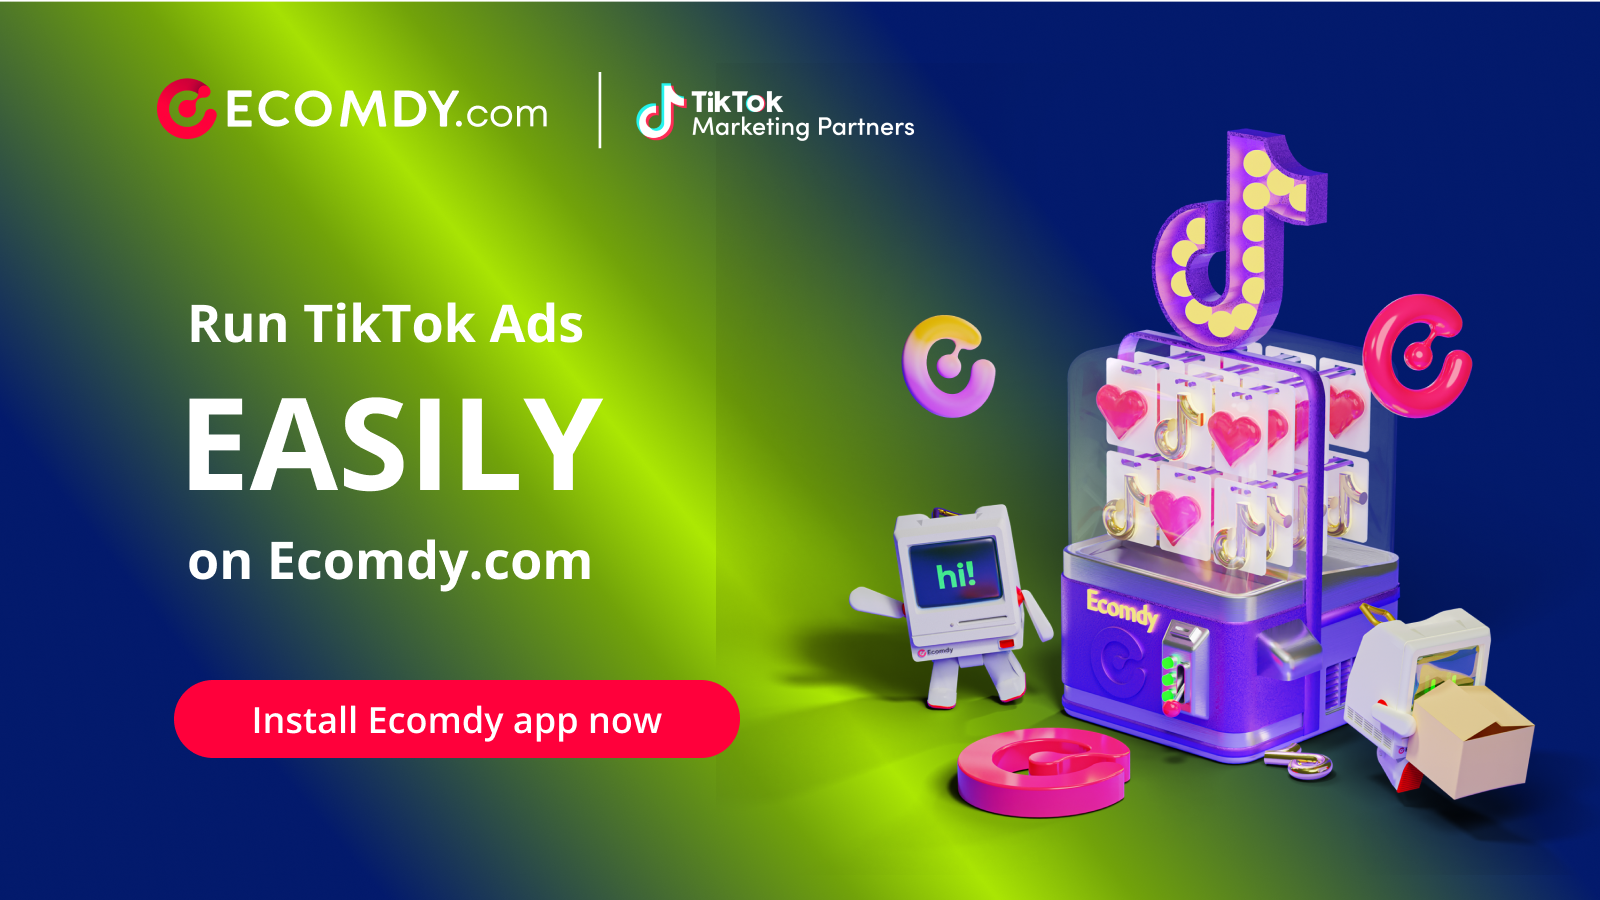 直接在Ecomdy.com上运行TikTok广告